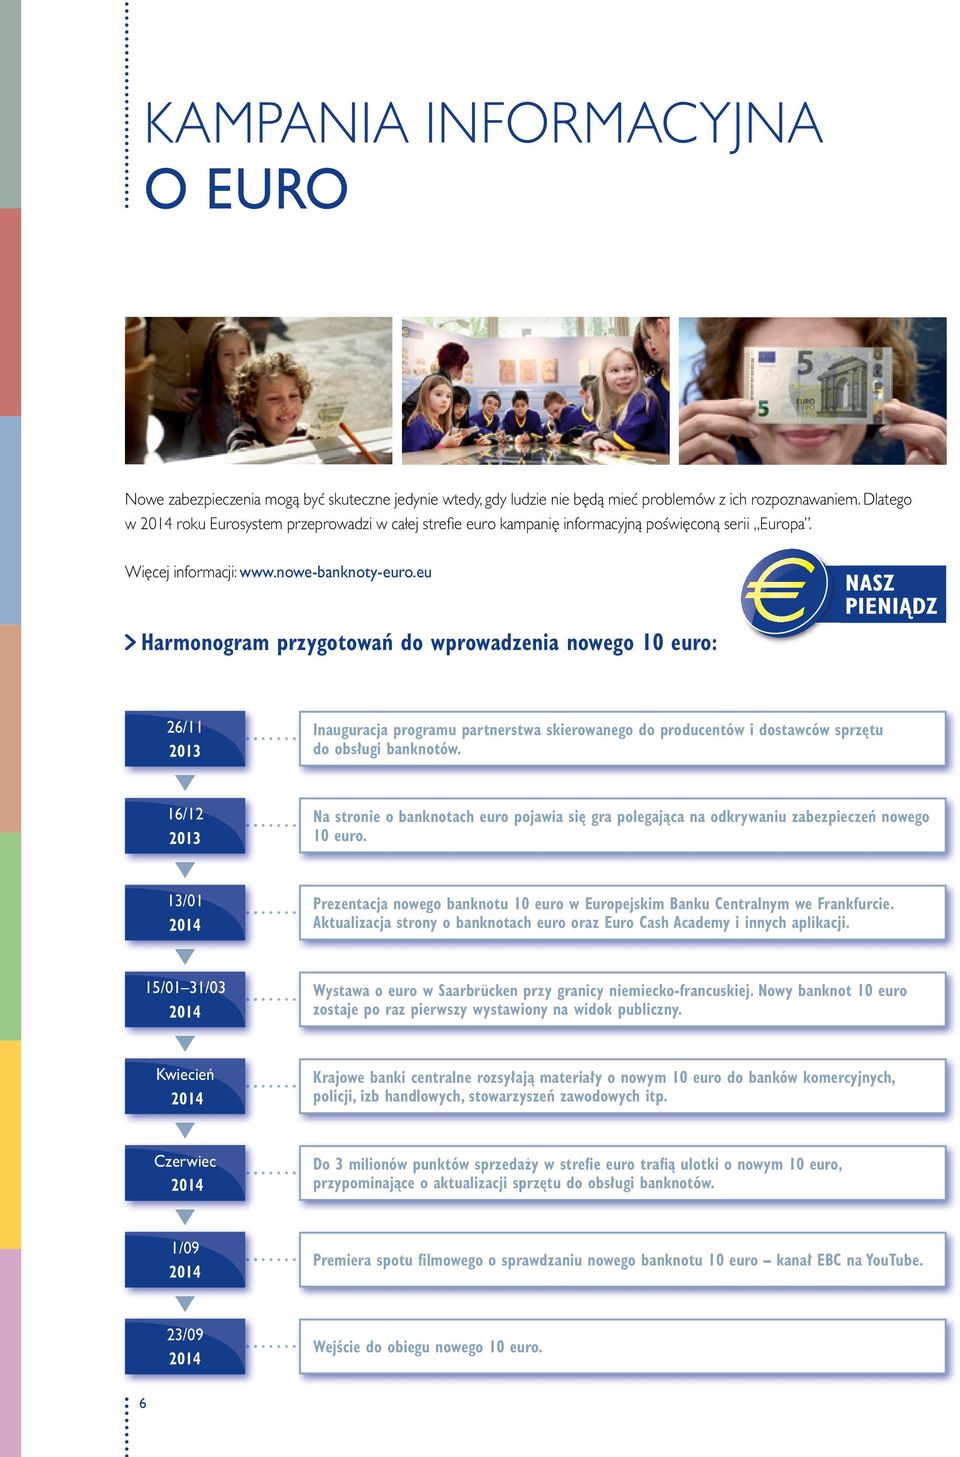 eu Harmonogram przygotowań do wprowadzenia nowego euro: 26/11 2013 Inauguracja programu partnerstwa skierowanego do producentów i dostawców sprzętu do obsługi banknotów.